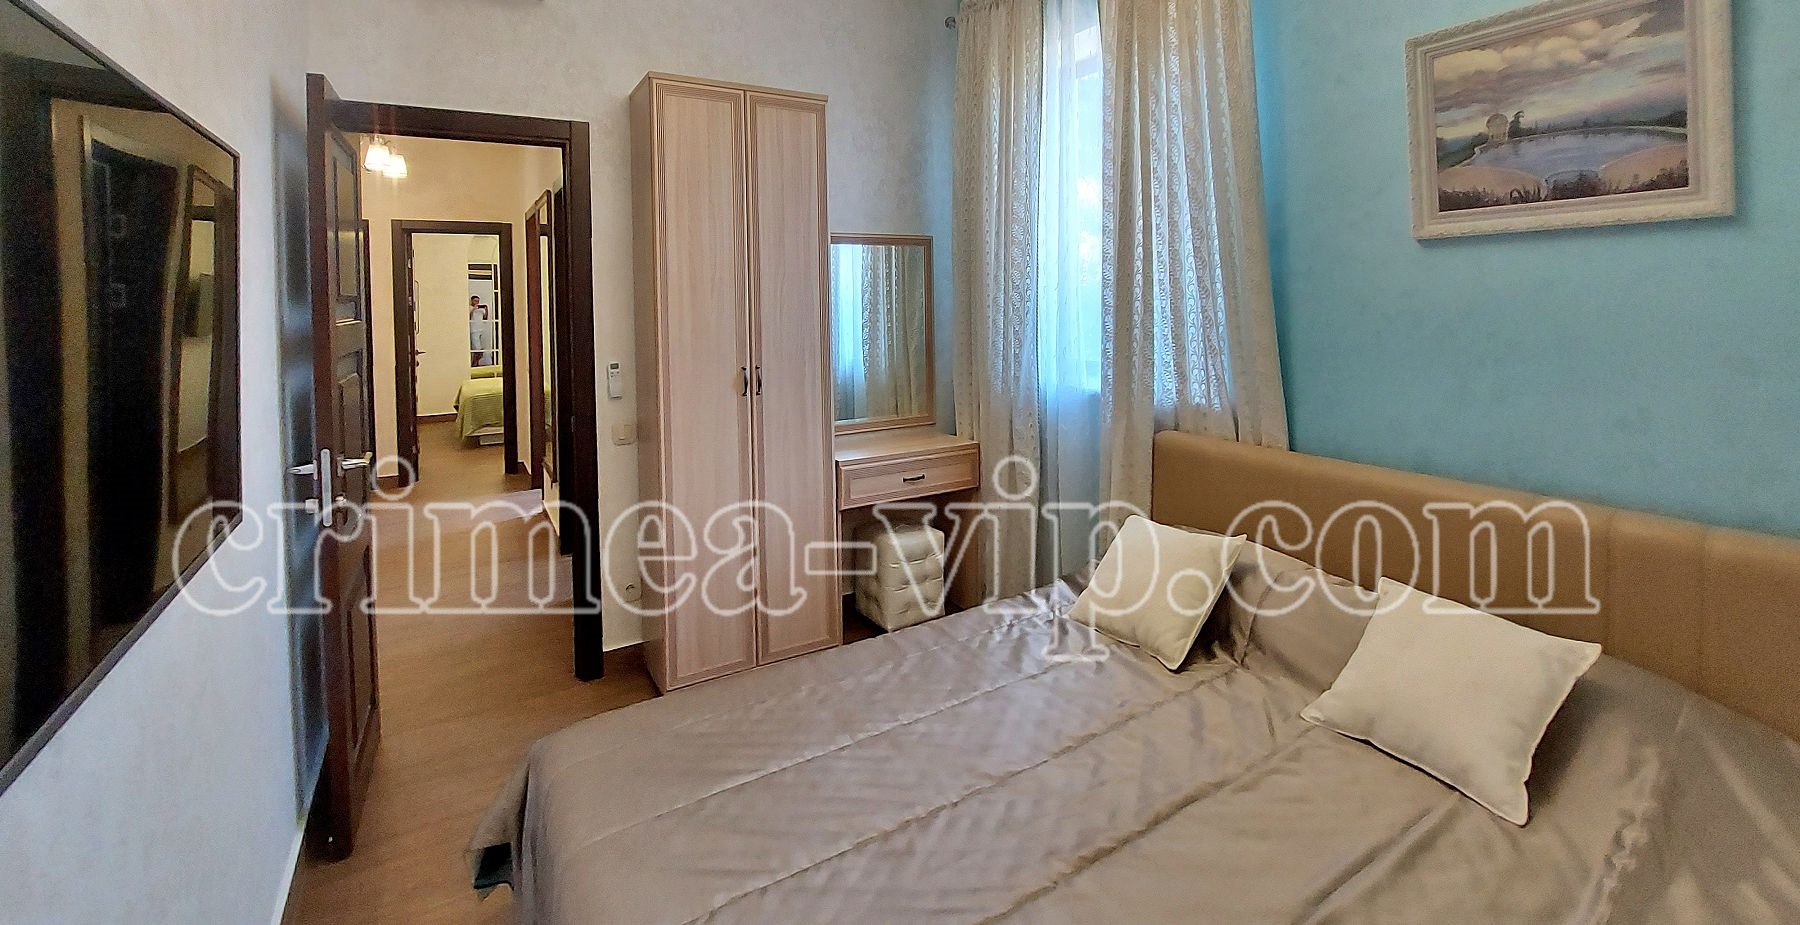 АП-3010. Апартамента на 2 спальни в Бекетово.